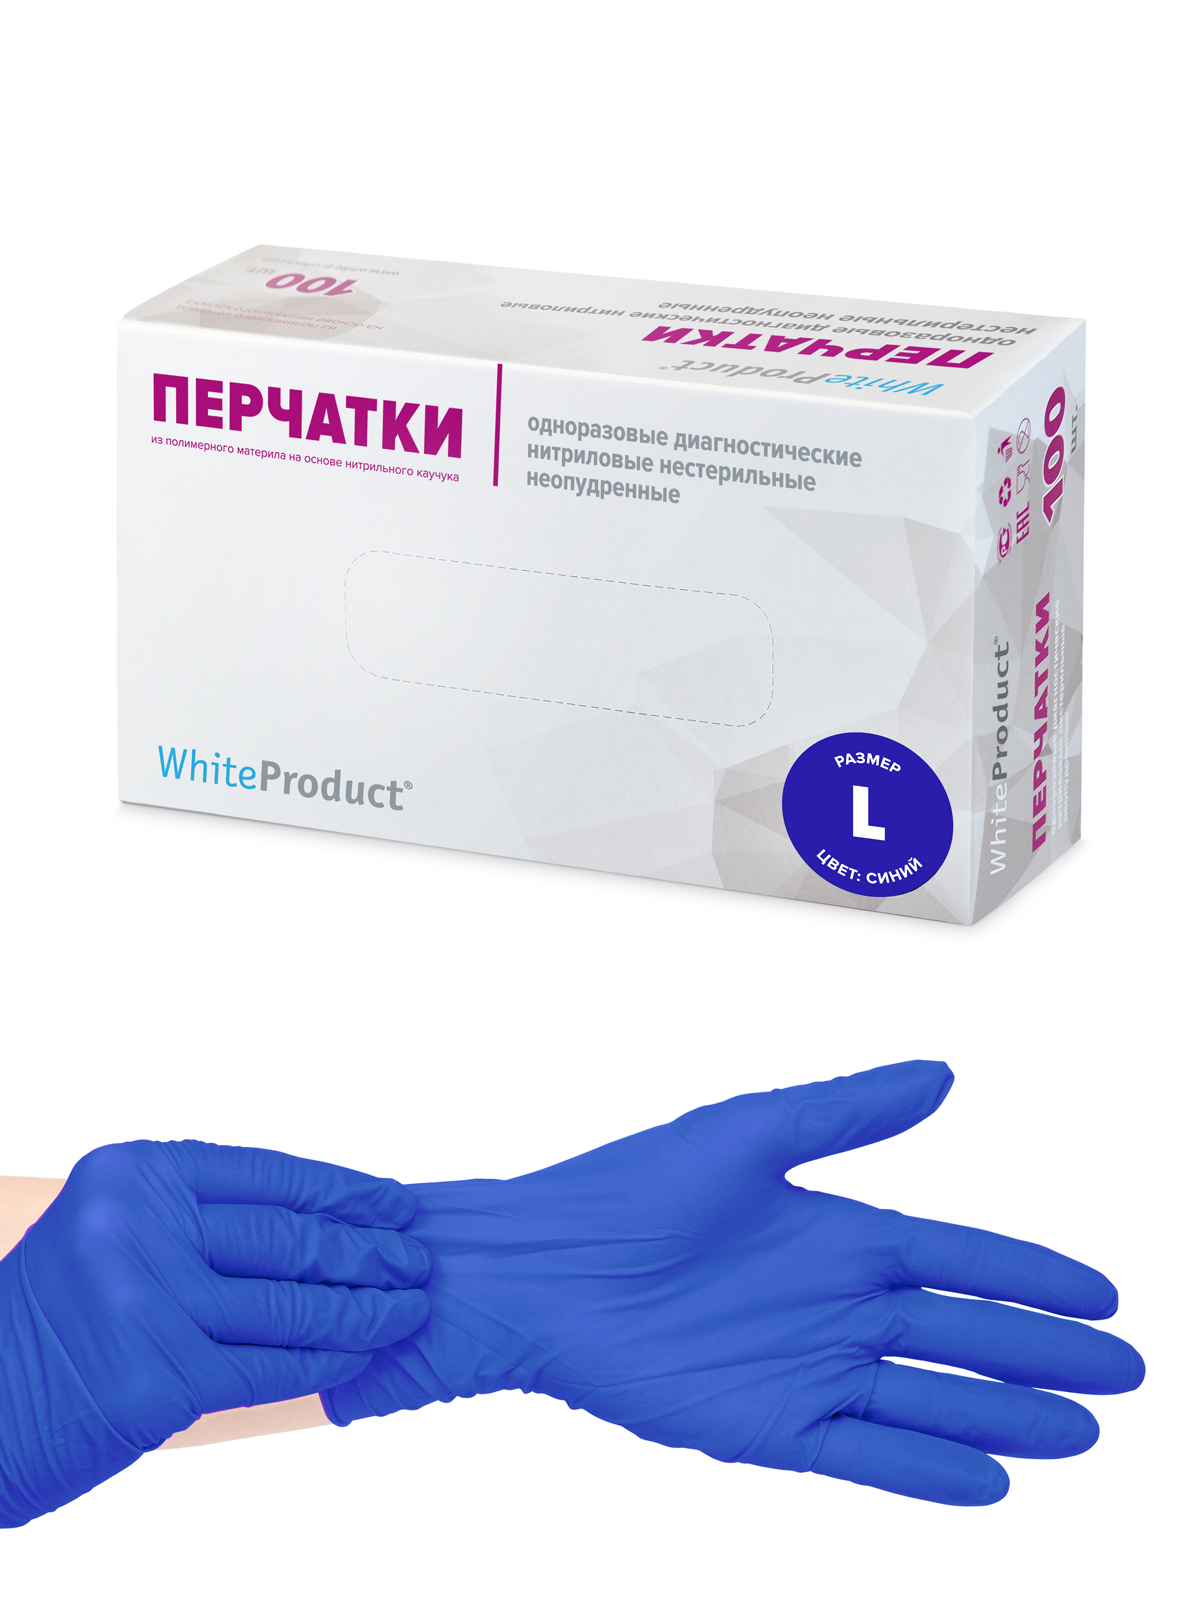 Перчатки медицинские WHITE PRODUCT текстурированные синие, размер L, 100 шт, Нитрил